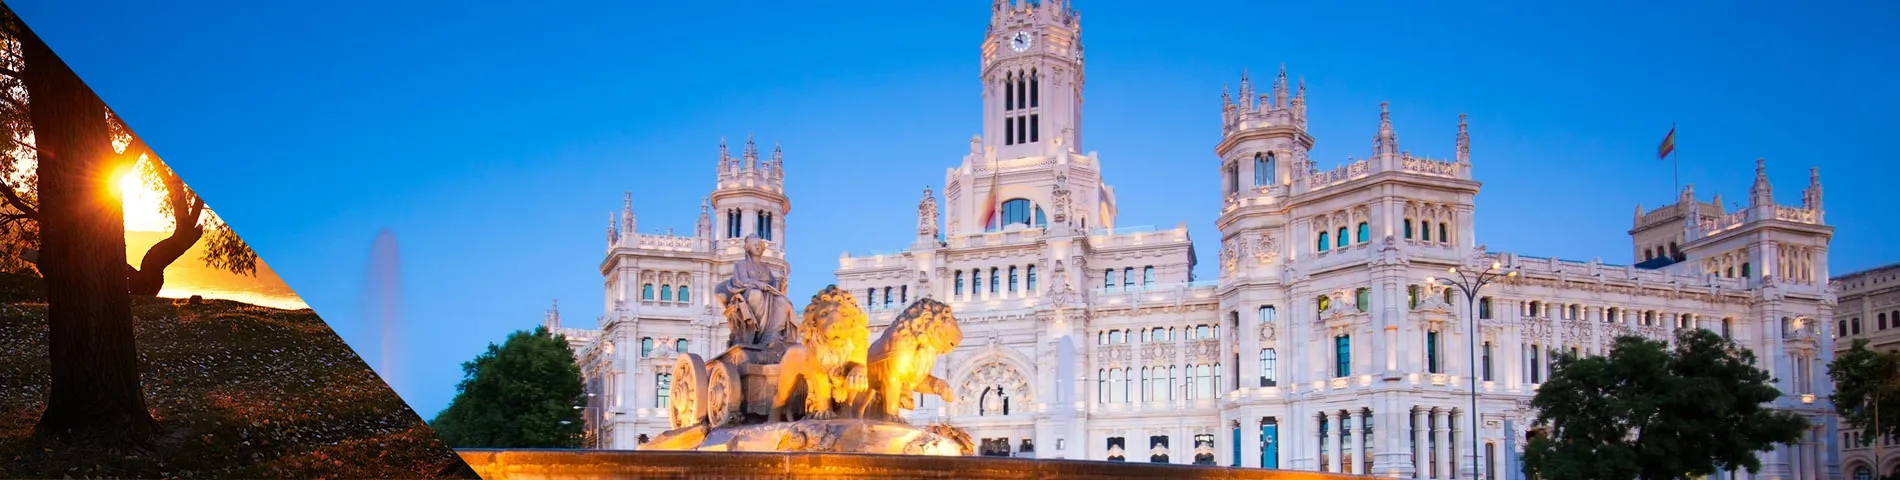 Мадрид - Післяобідній час